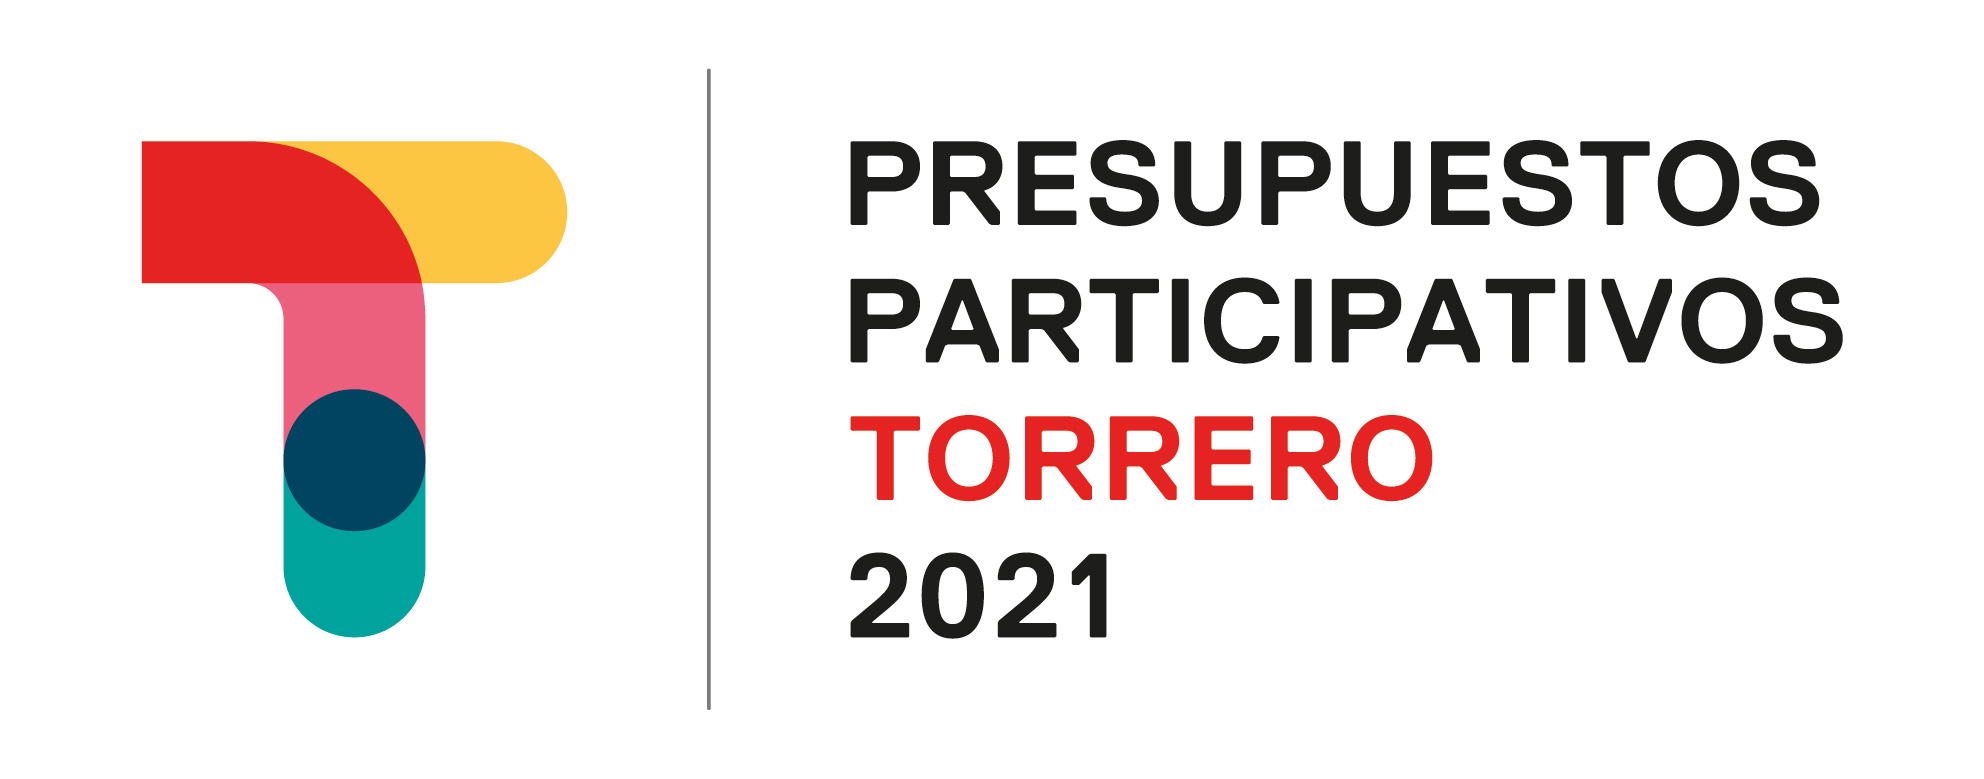 Presupuestos Participativos 2021. Junta Municipal de Torrero